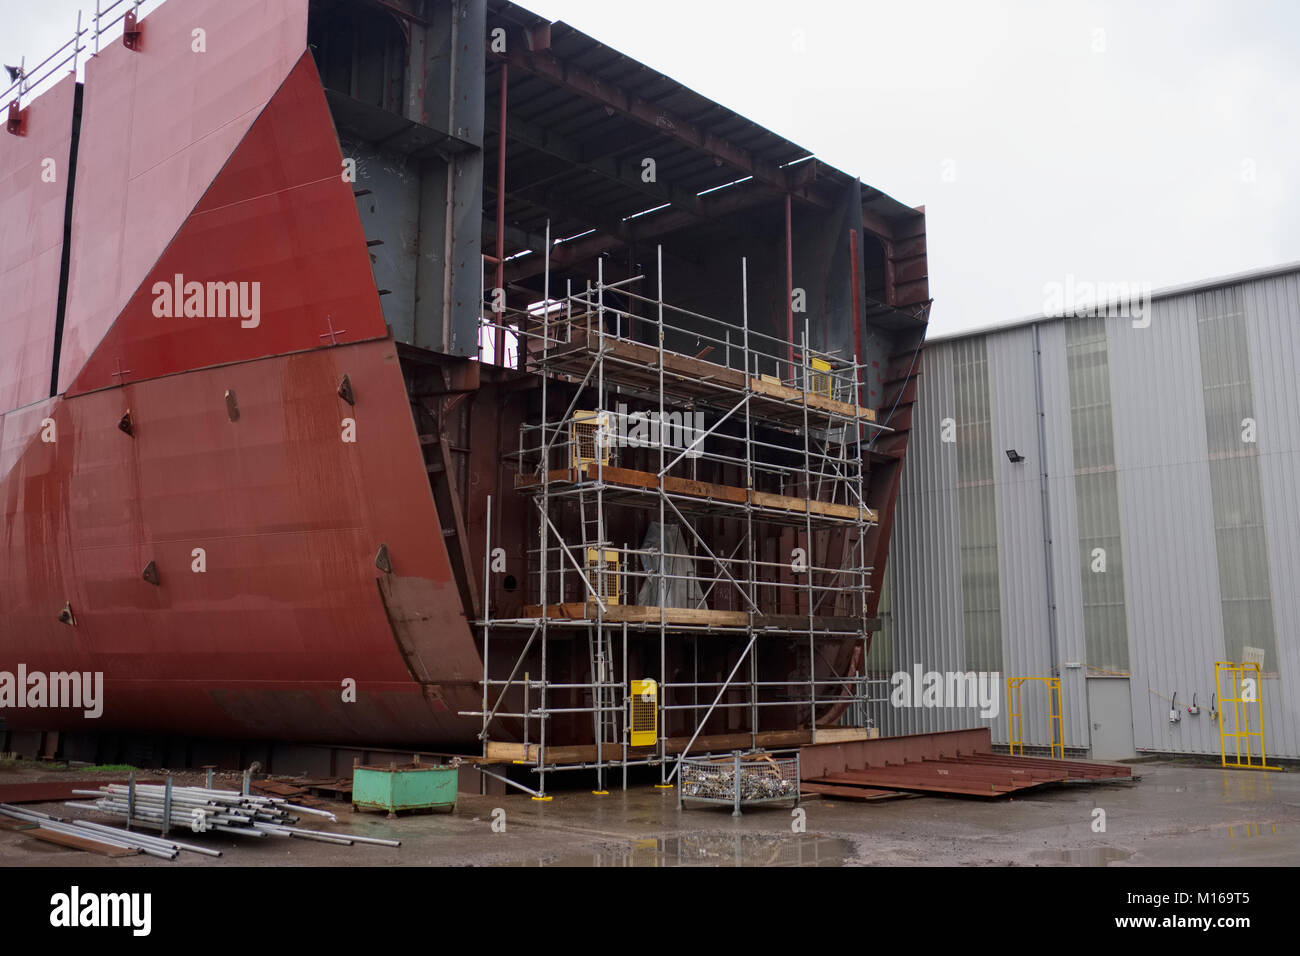 La construction navale en cours avec l'échafaudage autour des grands navires en acier Banque D'Images